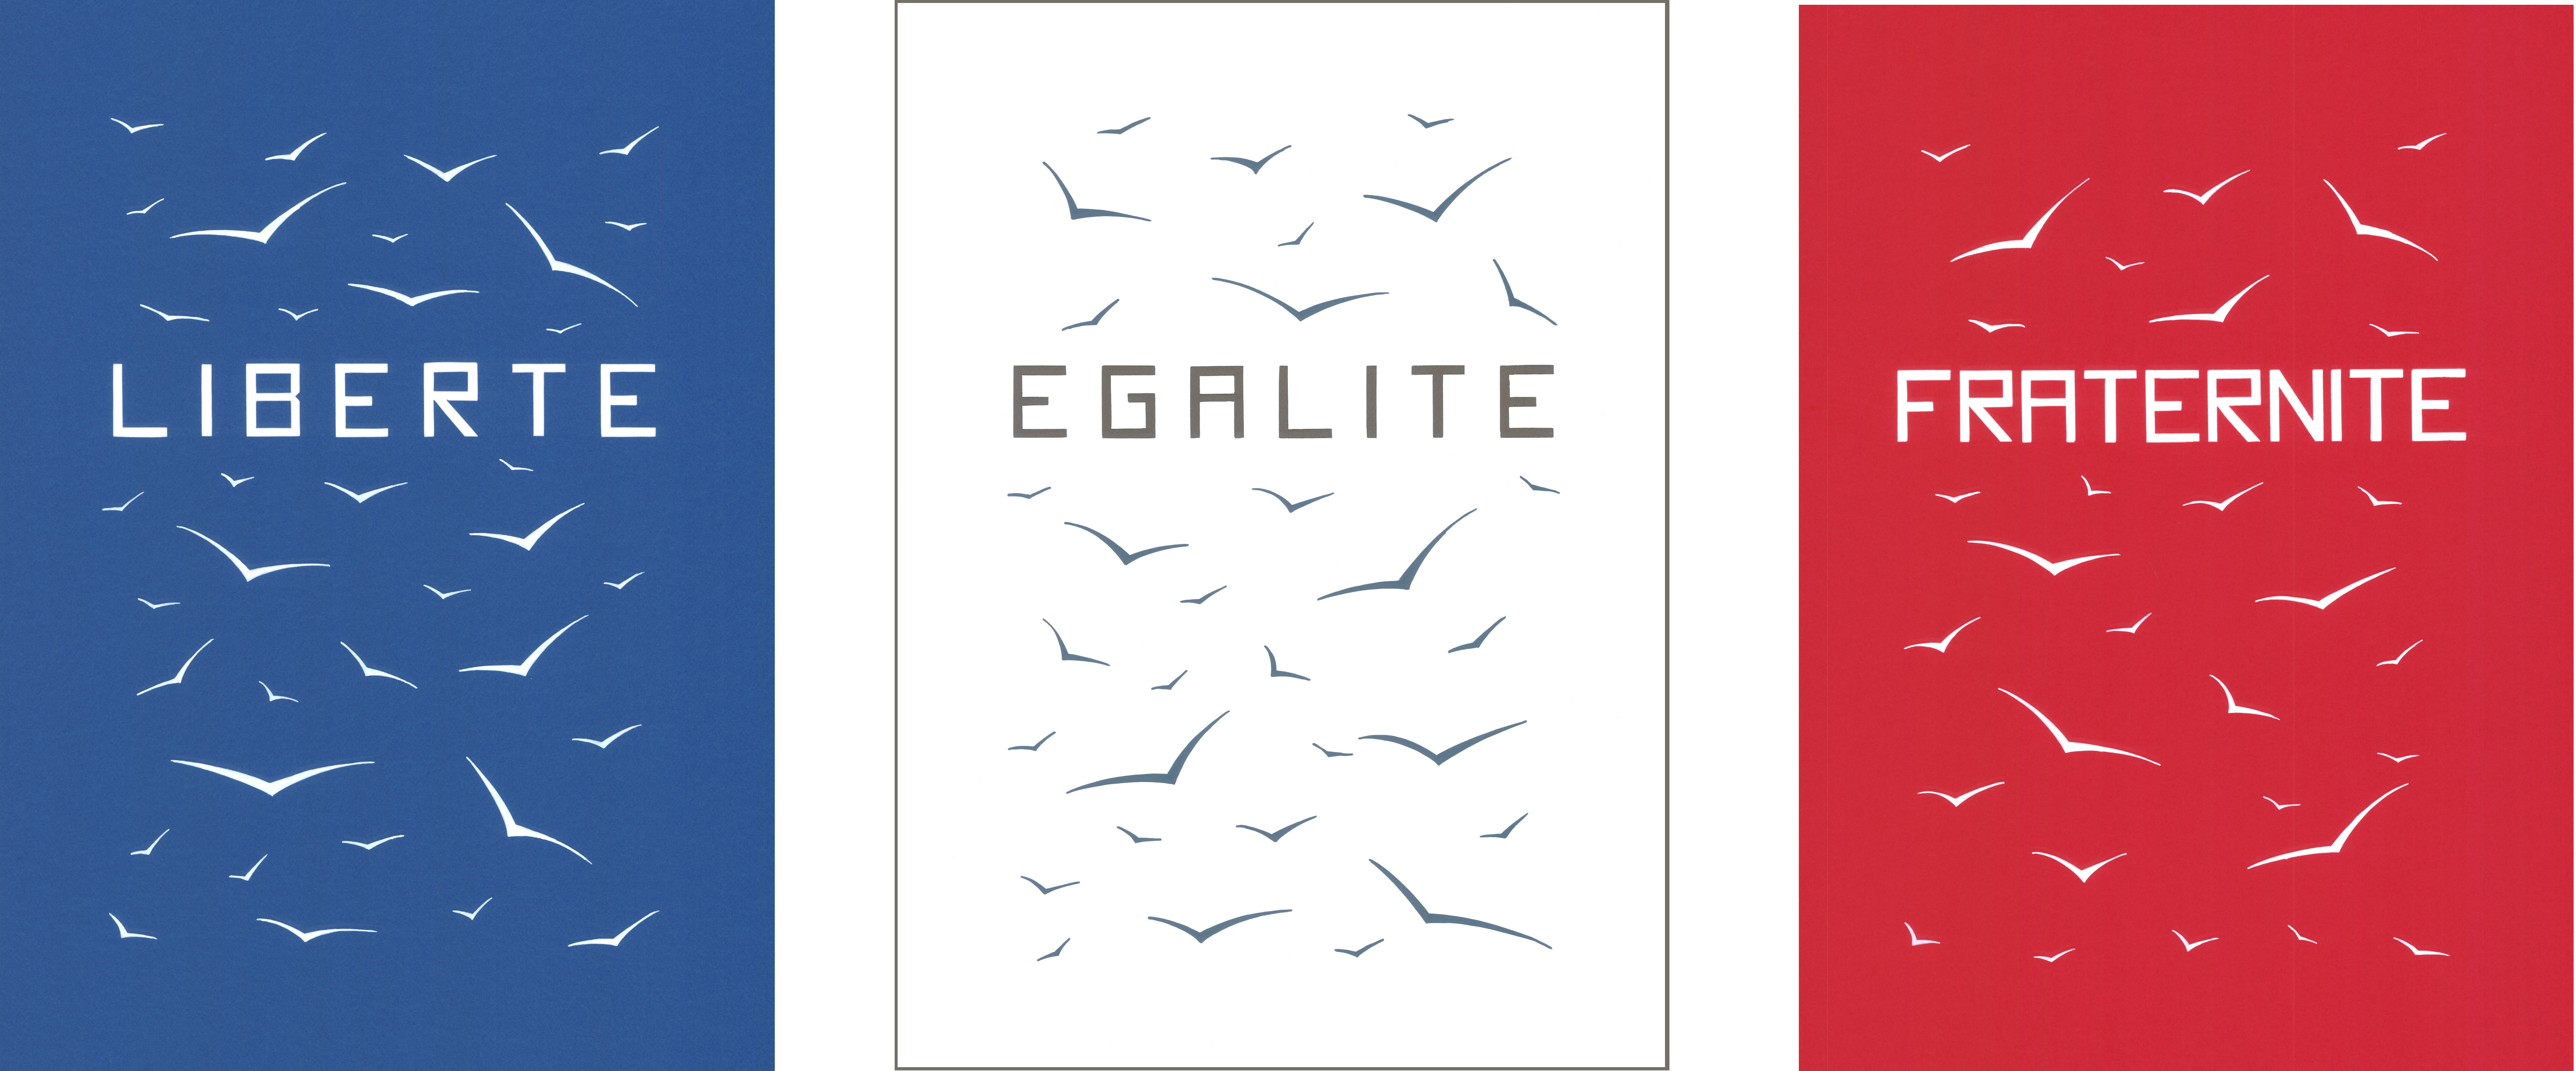 Editorial]: Liberté. Egalité. Fraternité. - Untitled